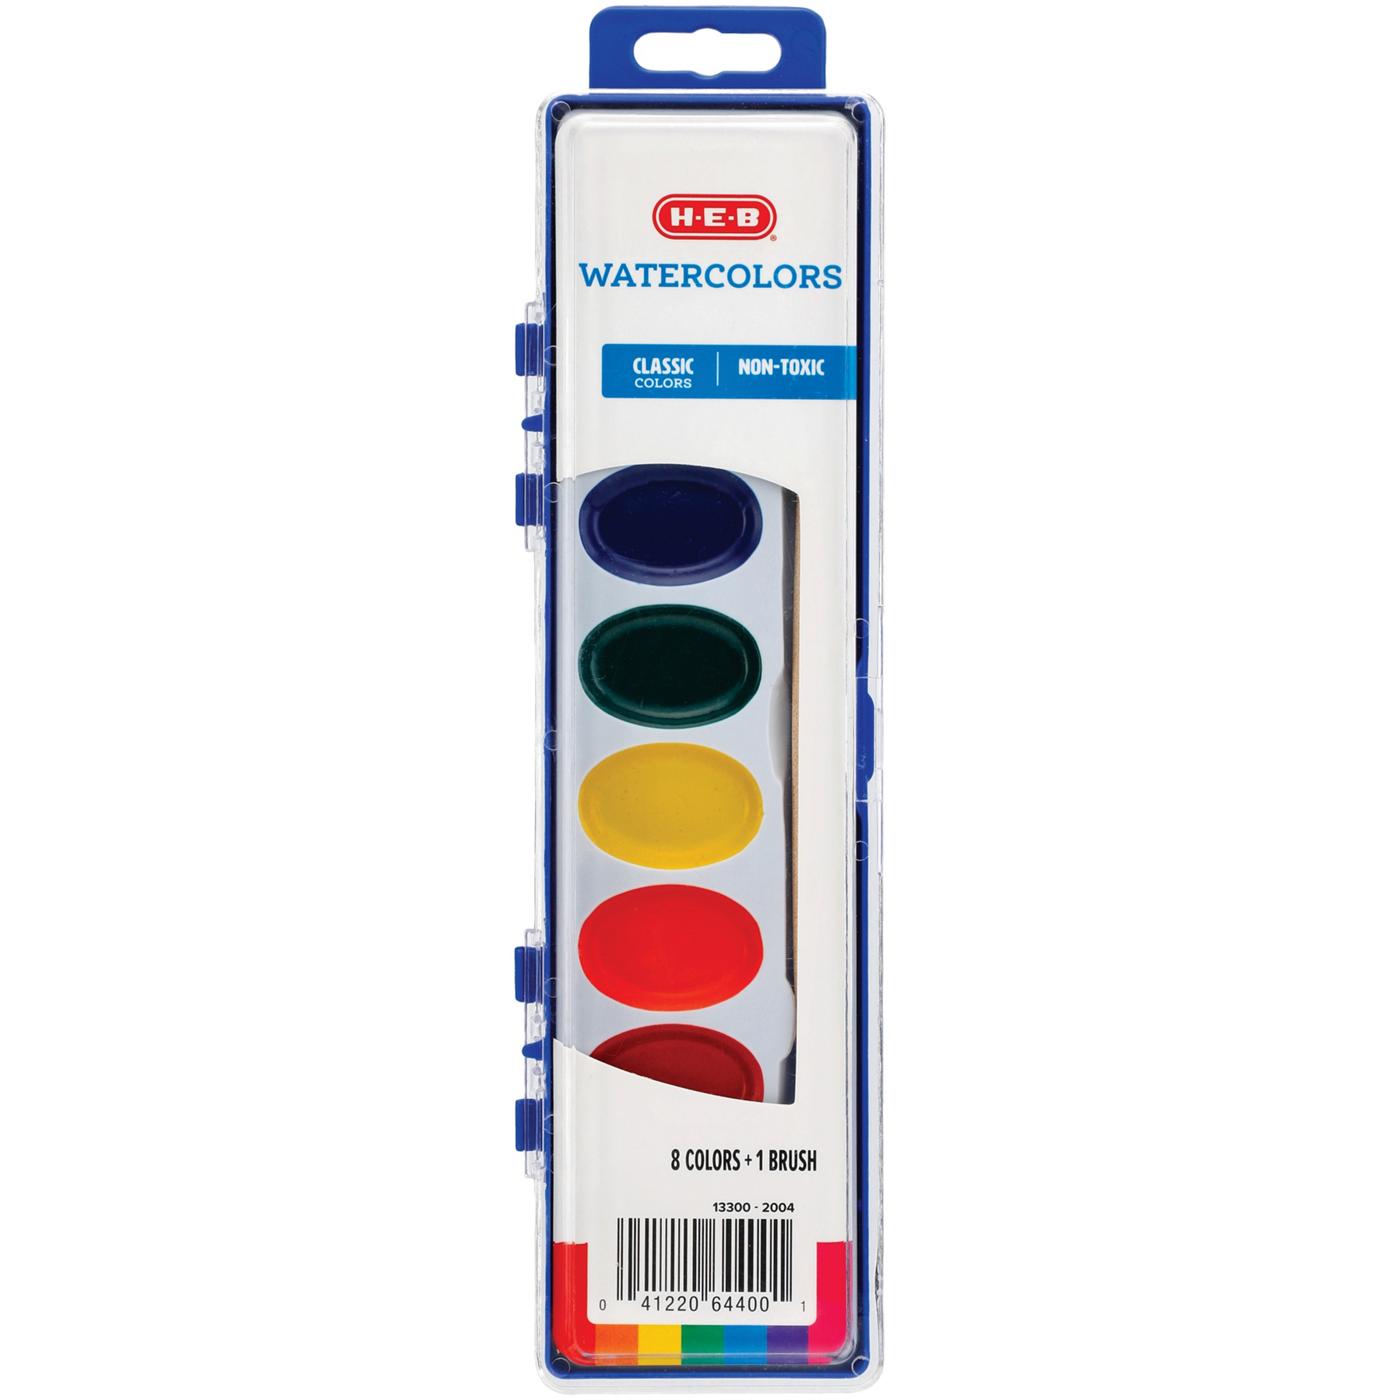 Paint Brush Set, 8 Paint Brushes for Kids, Crayola.com